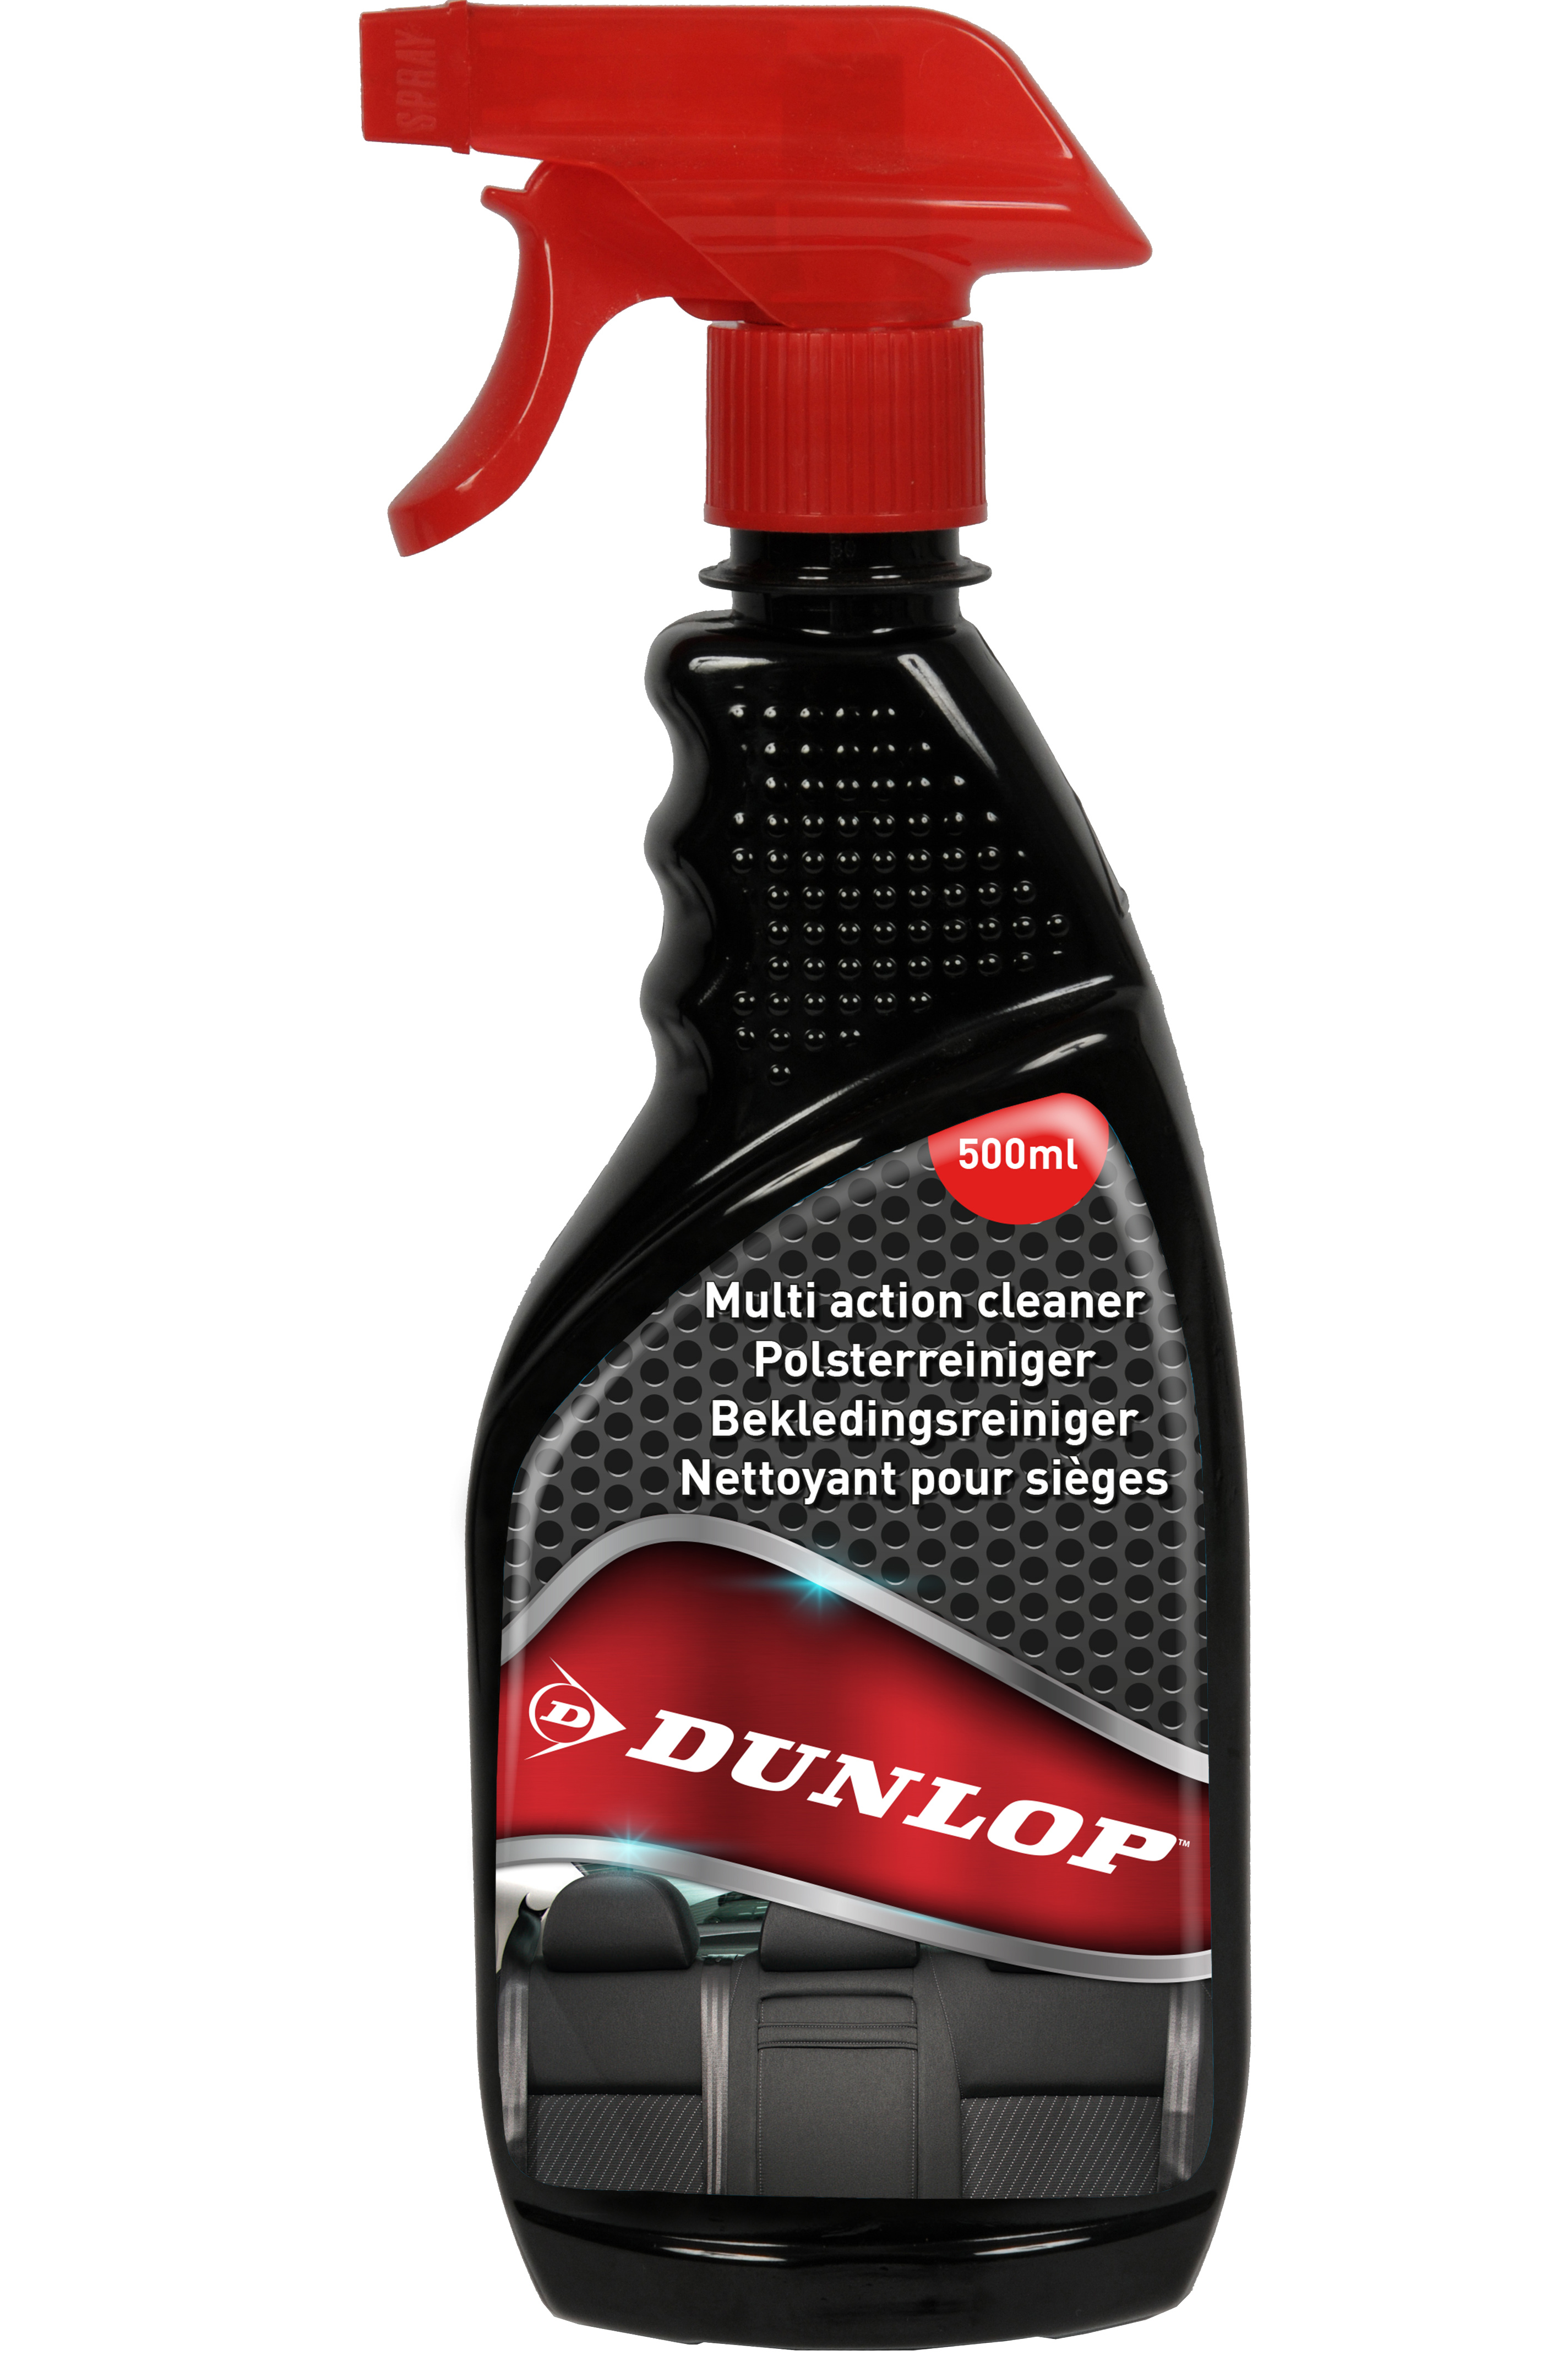 Nettoyant siège auto Dunlop sans rinçage 500ml